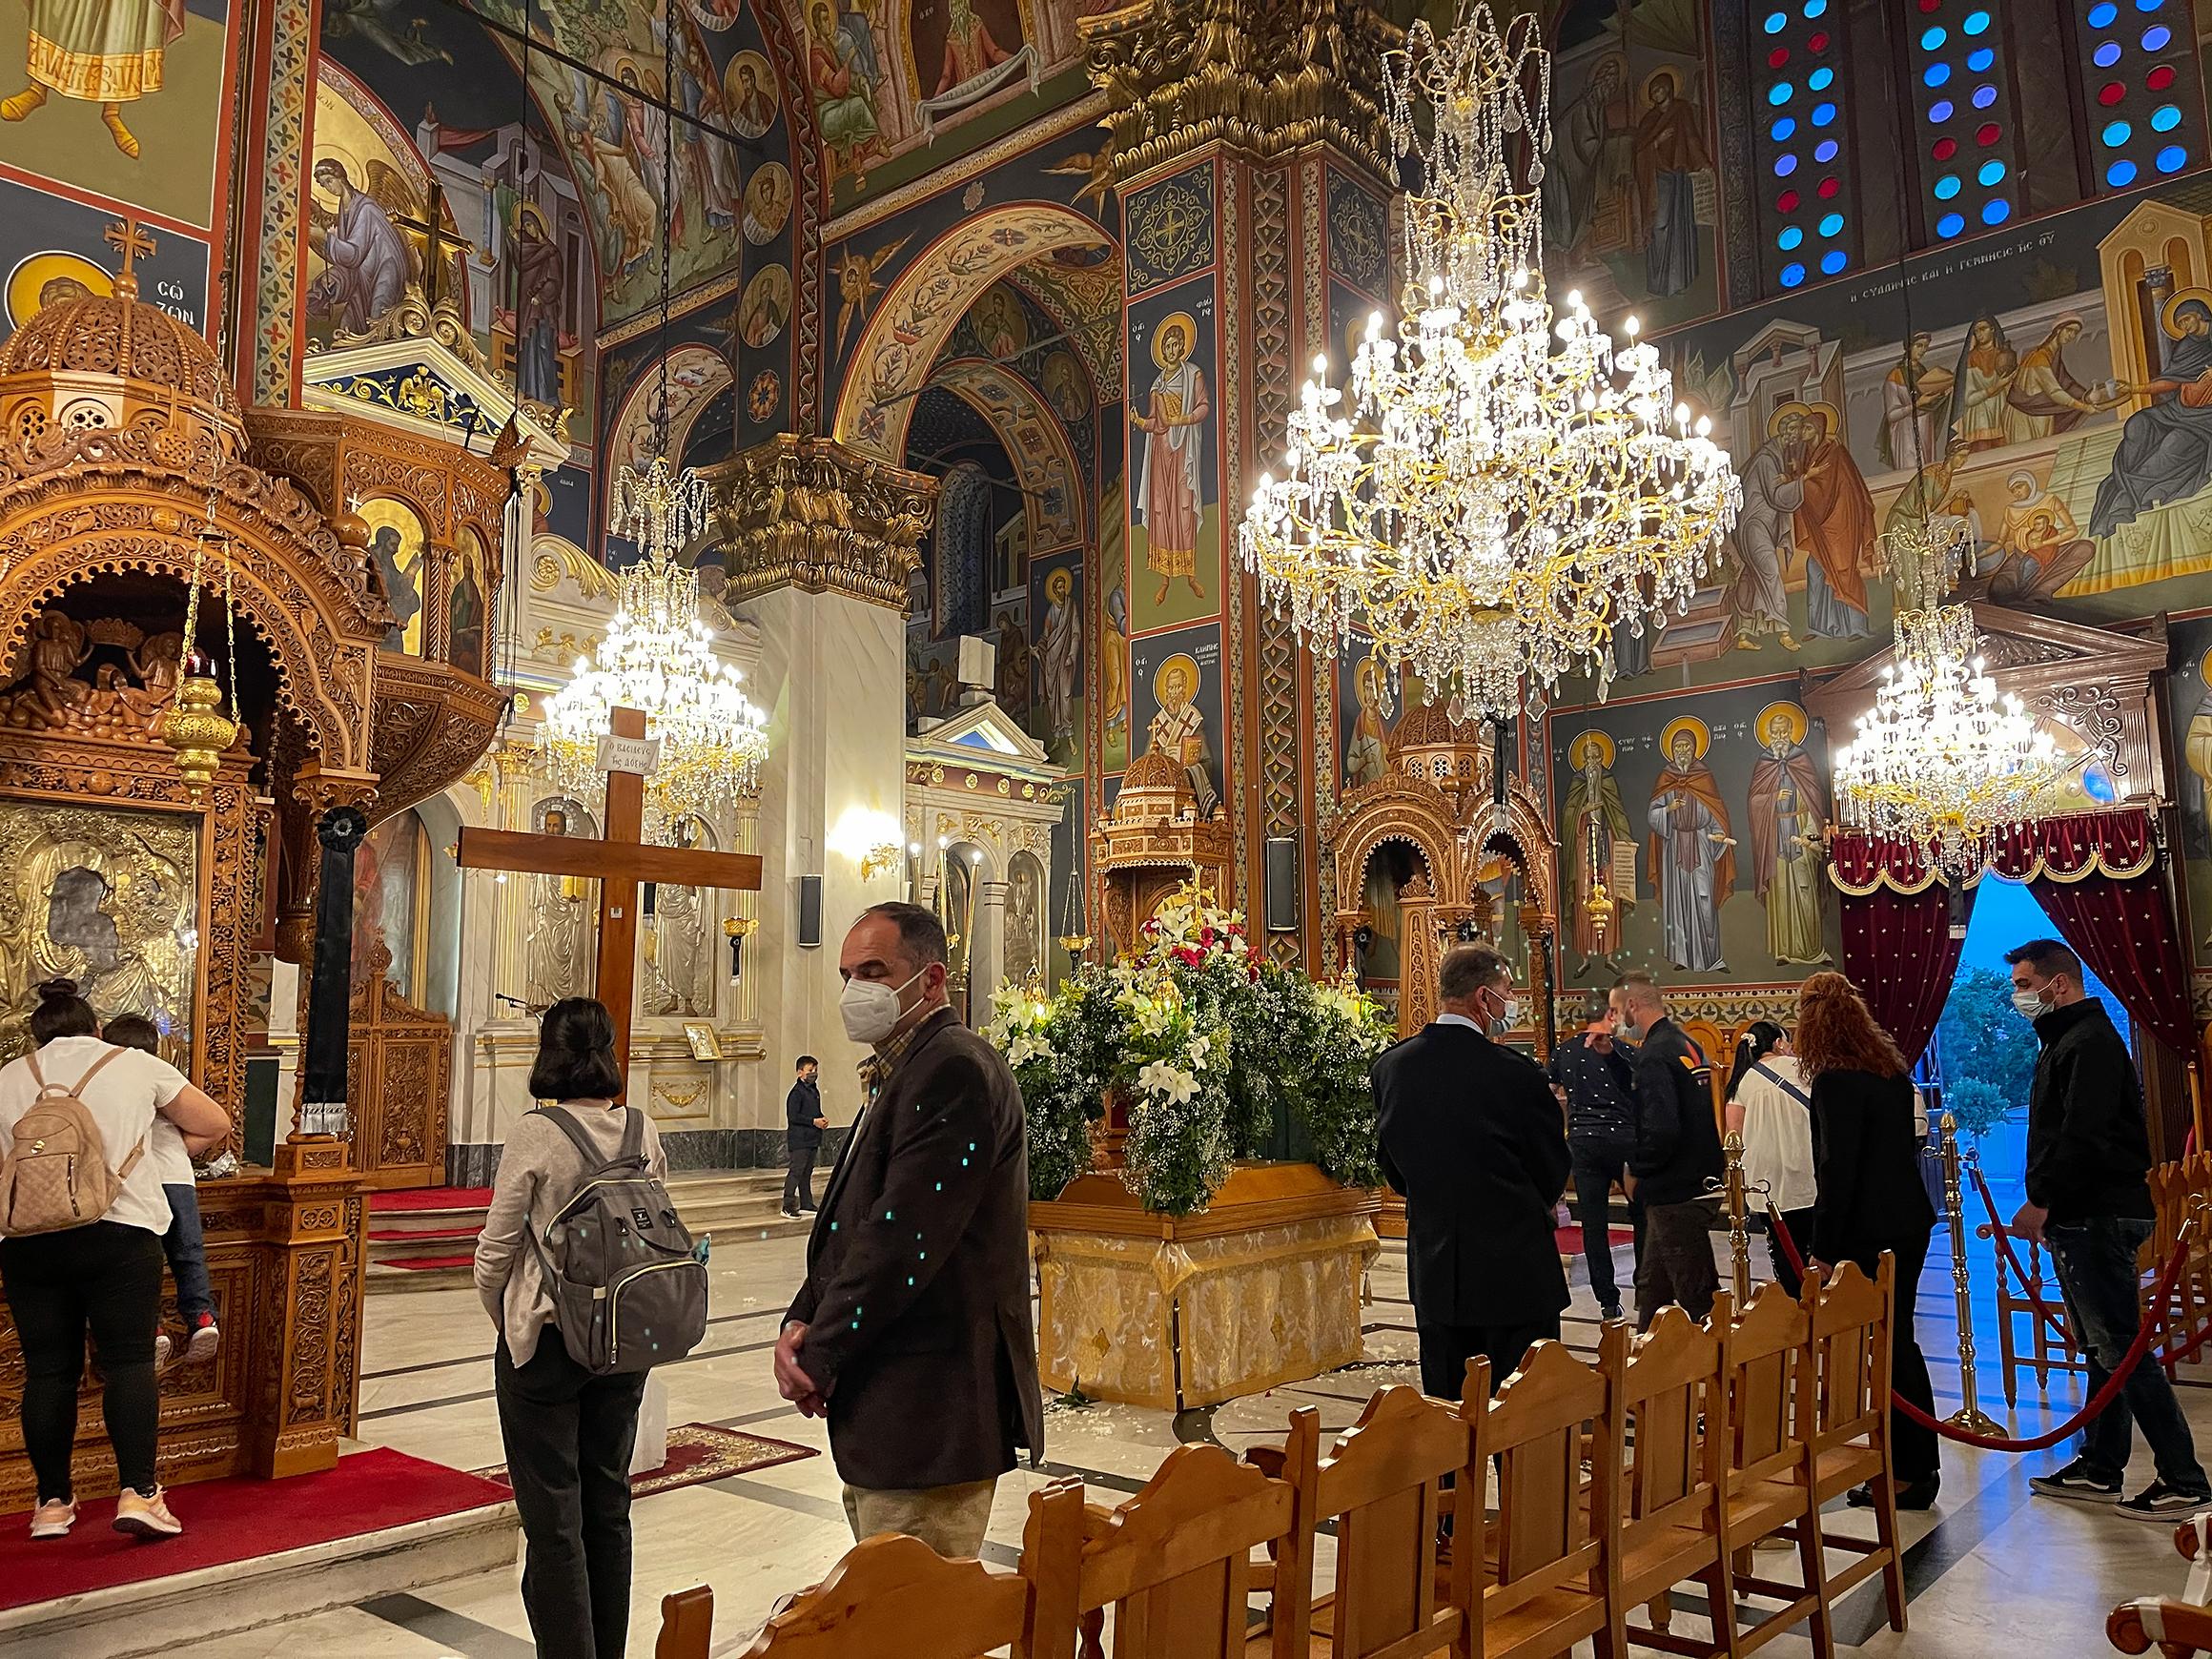 Credincioșii participă la o slujbă, într-o biserică din Grecia